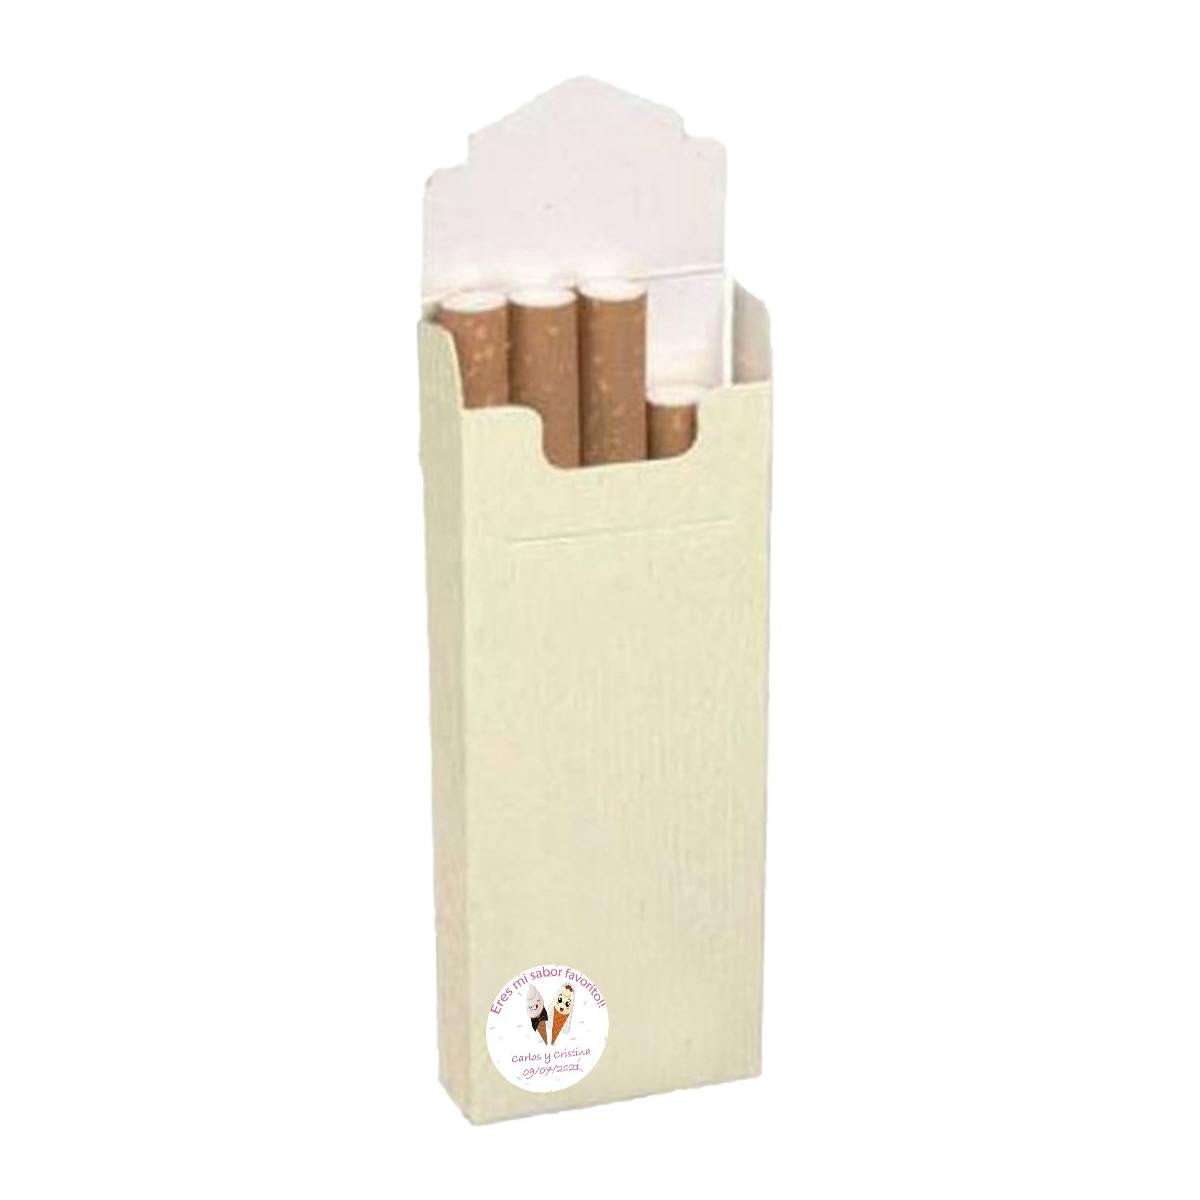 Cajetillas de tabaco para bodas detalles personalizados